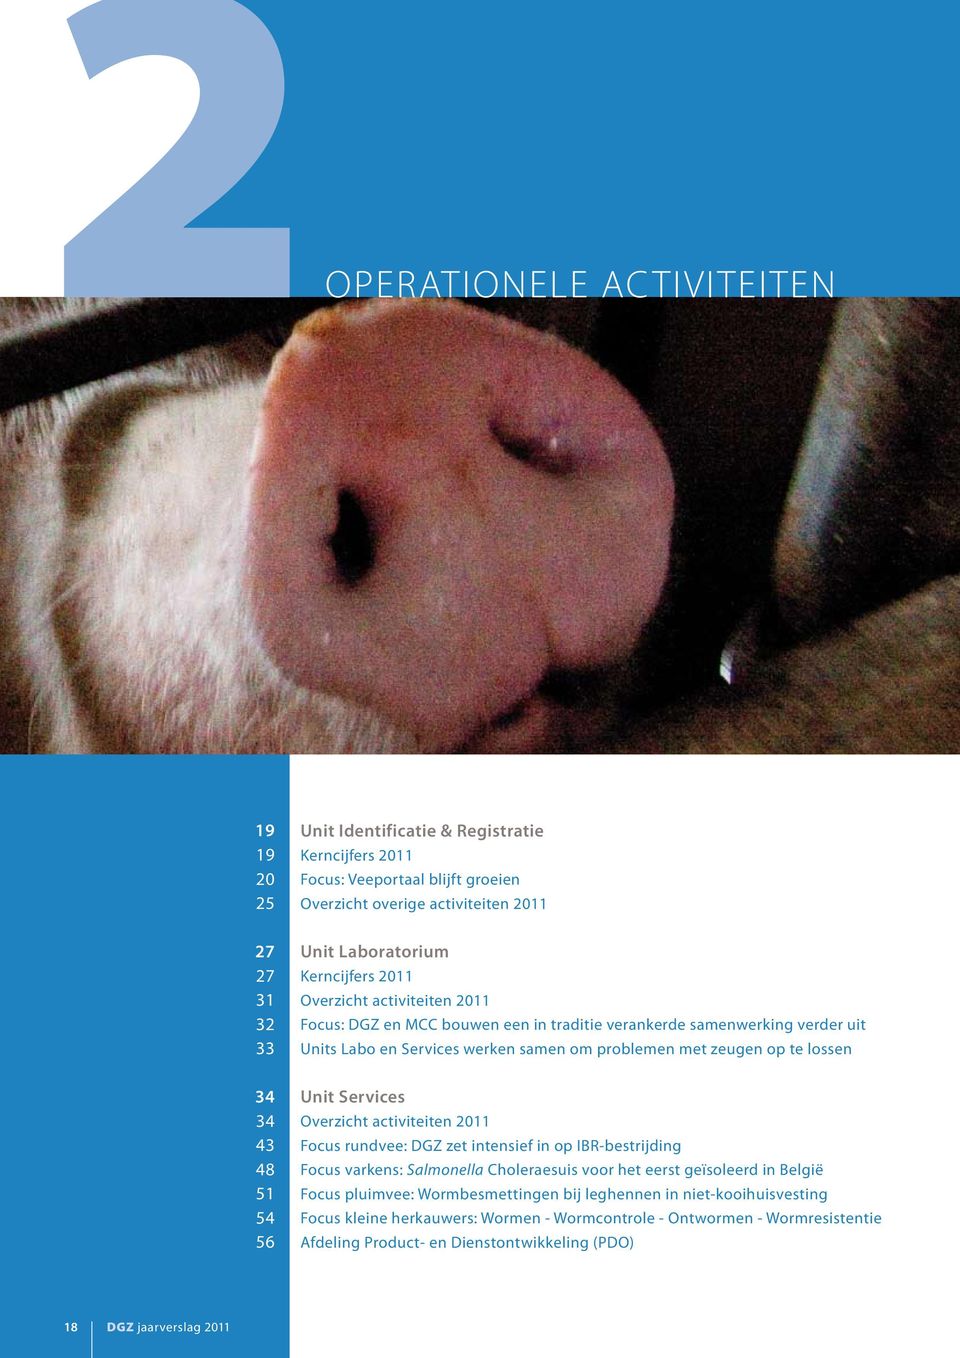 34 43 48 51 54 56 Unit Services Overzicht activiteiten 2011 Focus rundvee: DGZ zet intensief in op IBR-bestrijding Focus varkens: Salmonella Choleraesuis voor het eerst geïsoleerd in België Focus